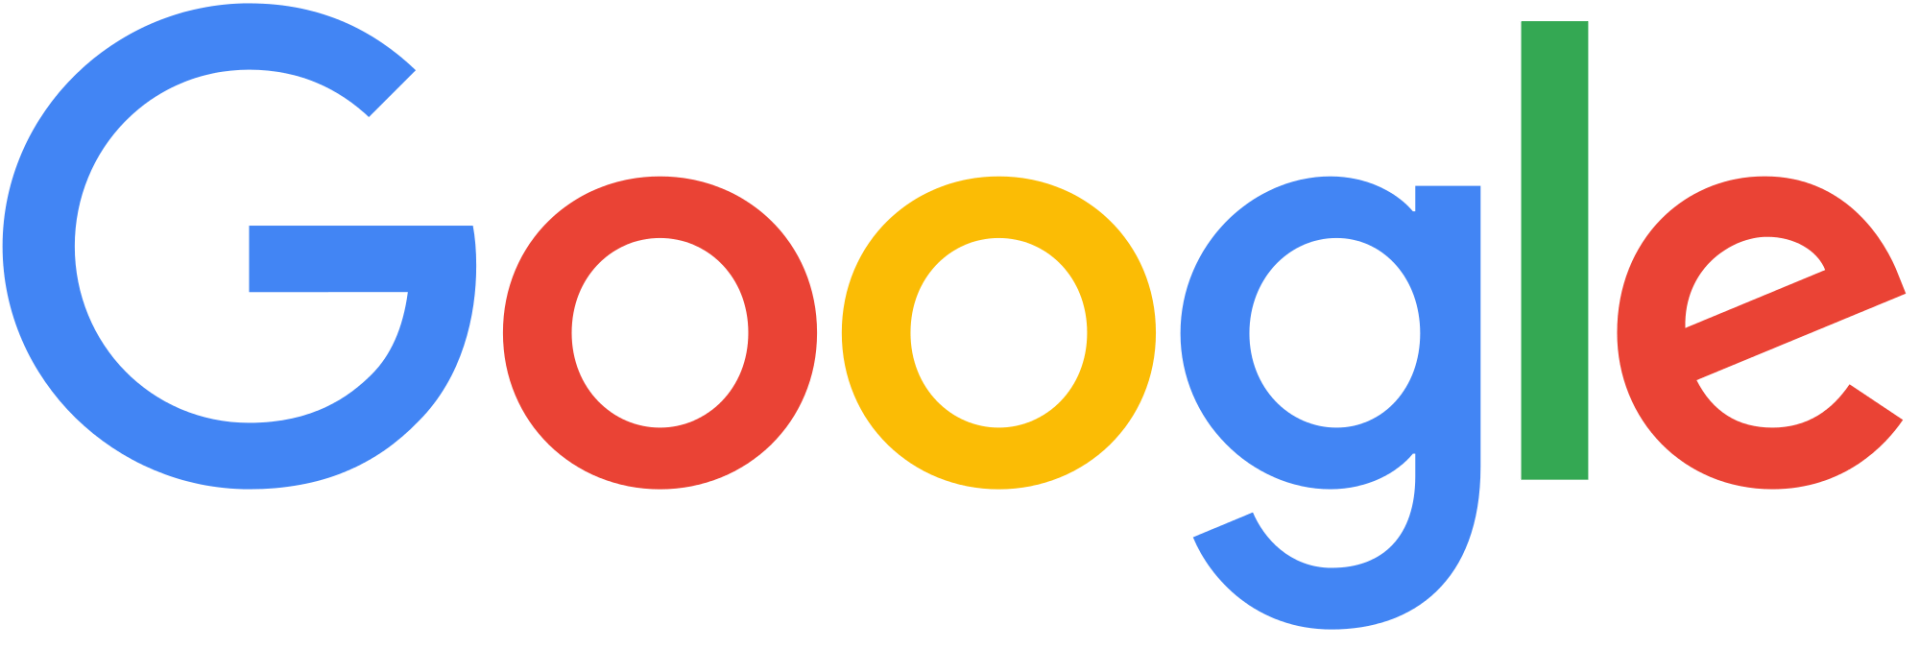 Morgan's Masonry Supply - Google 5 Star Review